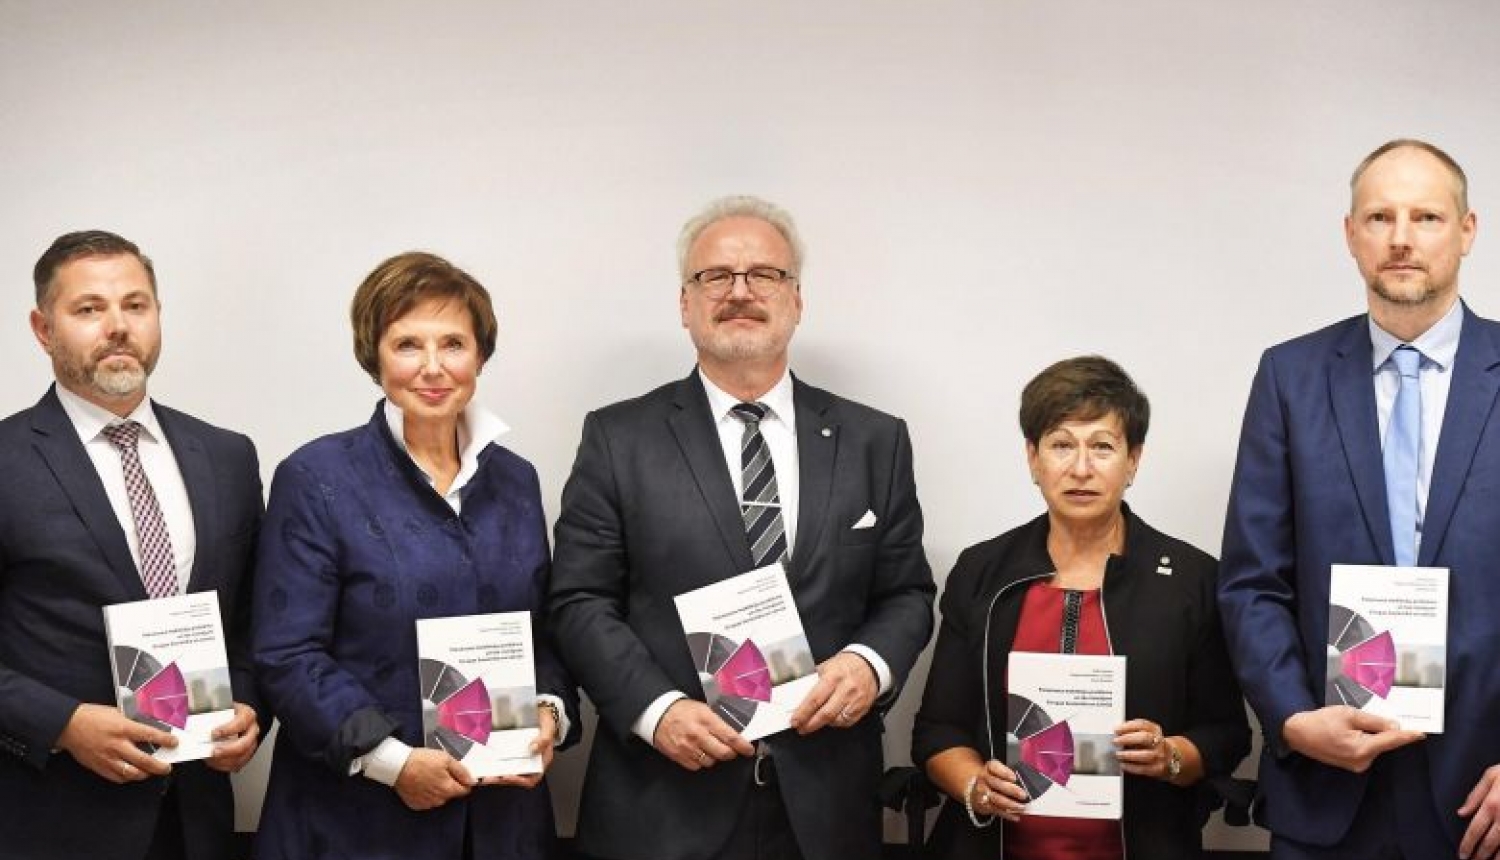 Valsts prezidenta uzruna grāmatas “Patvēruma meklētāju problēma un tās risinājumi Eiropas Savienībā un Latvijā” atvēršanas svētkos Eiropas Savienības mājā